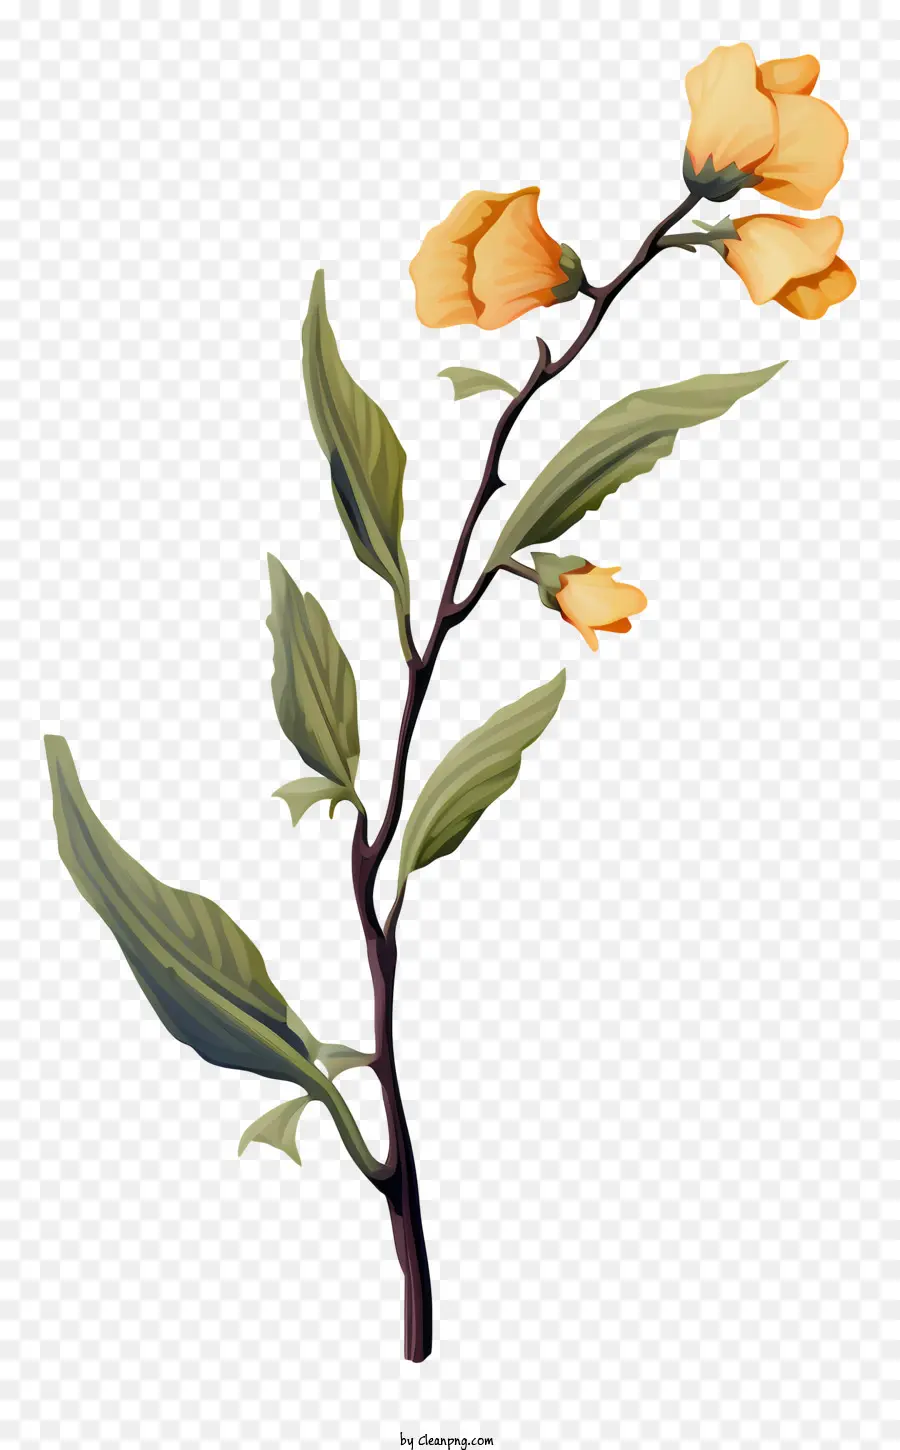 fiore giallo - Fiore giallo con petali e foglie a forma di stella